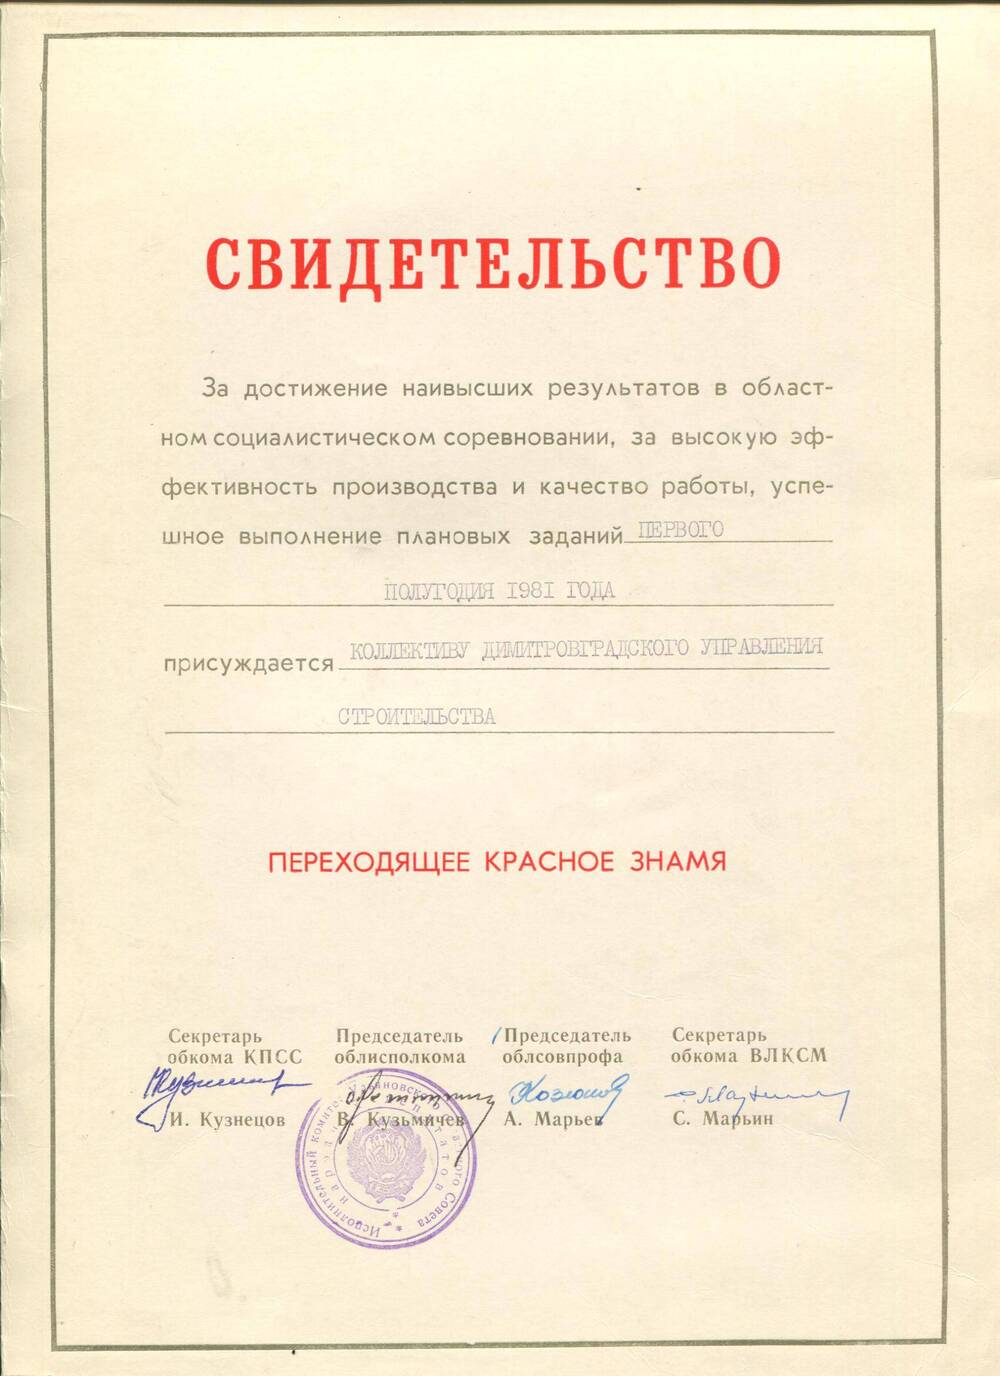 Свидетельство о вручении Красного знамени ДУСу. г.Ульяновск,1981 г.